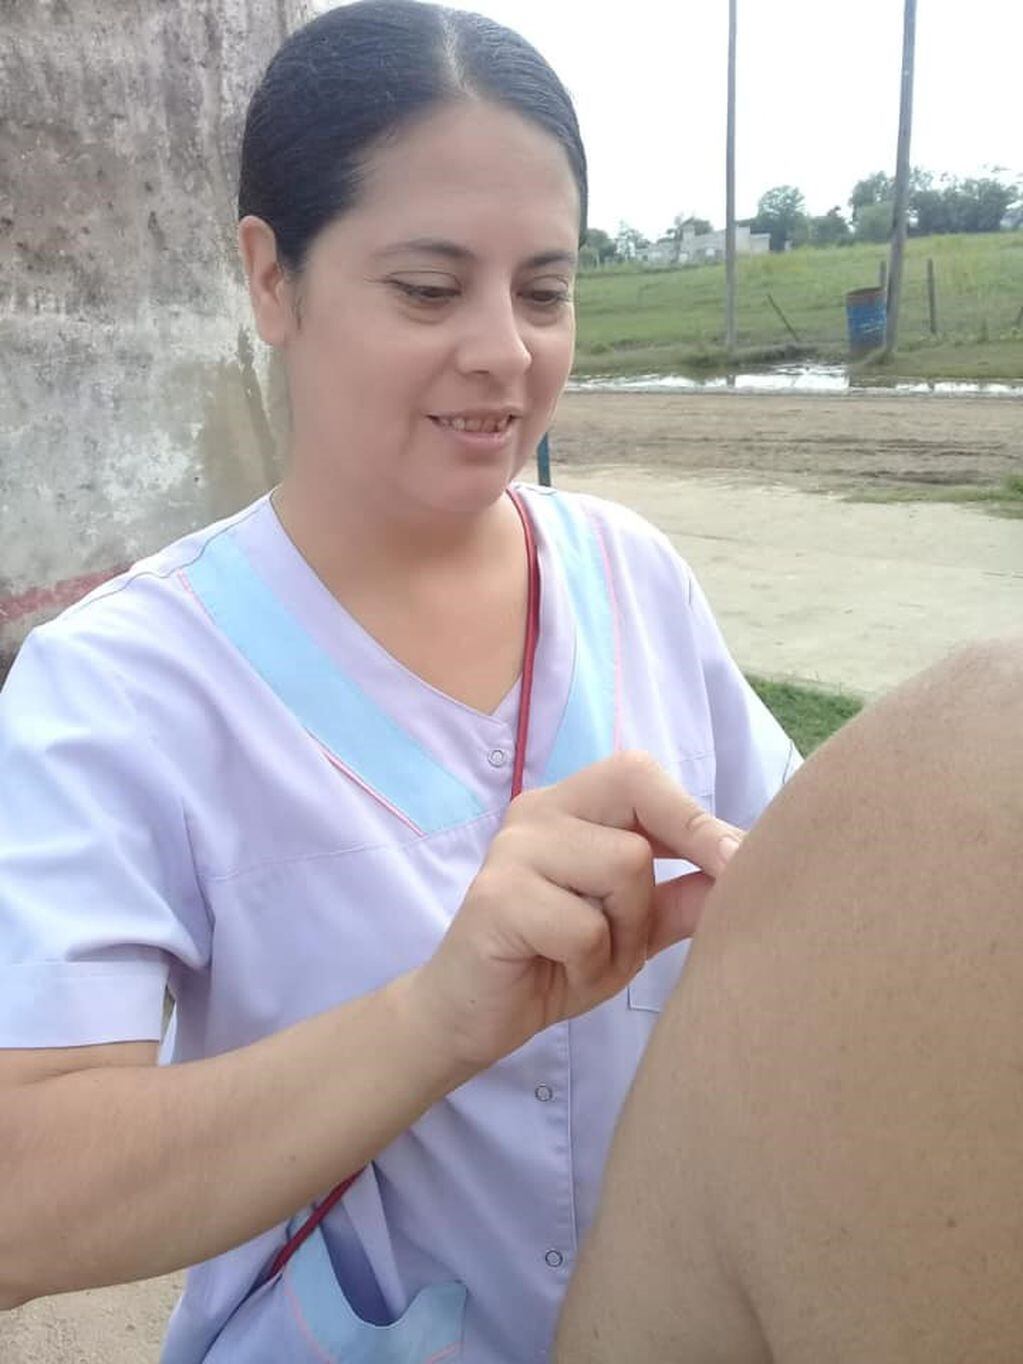 Vacunación contra la Fiebre Hemorrágica Argentina